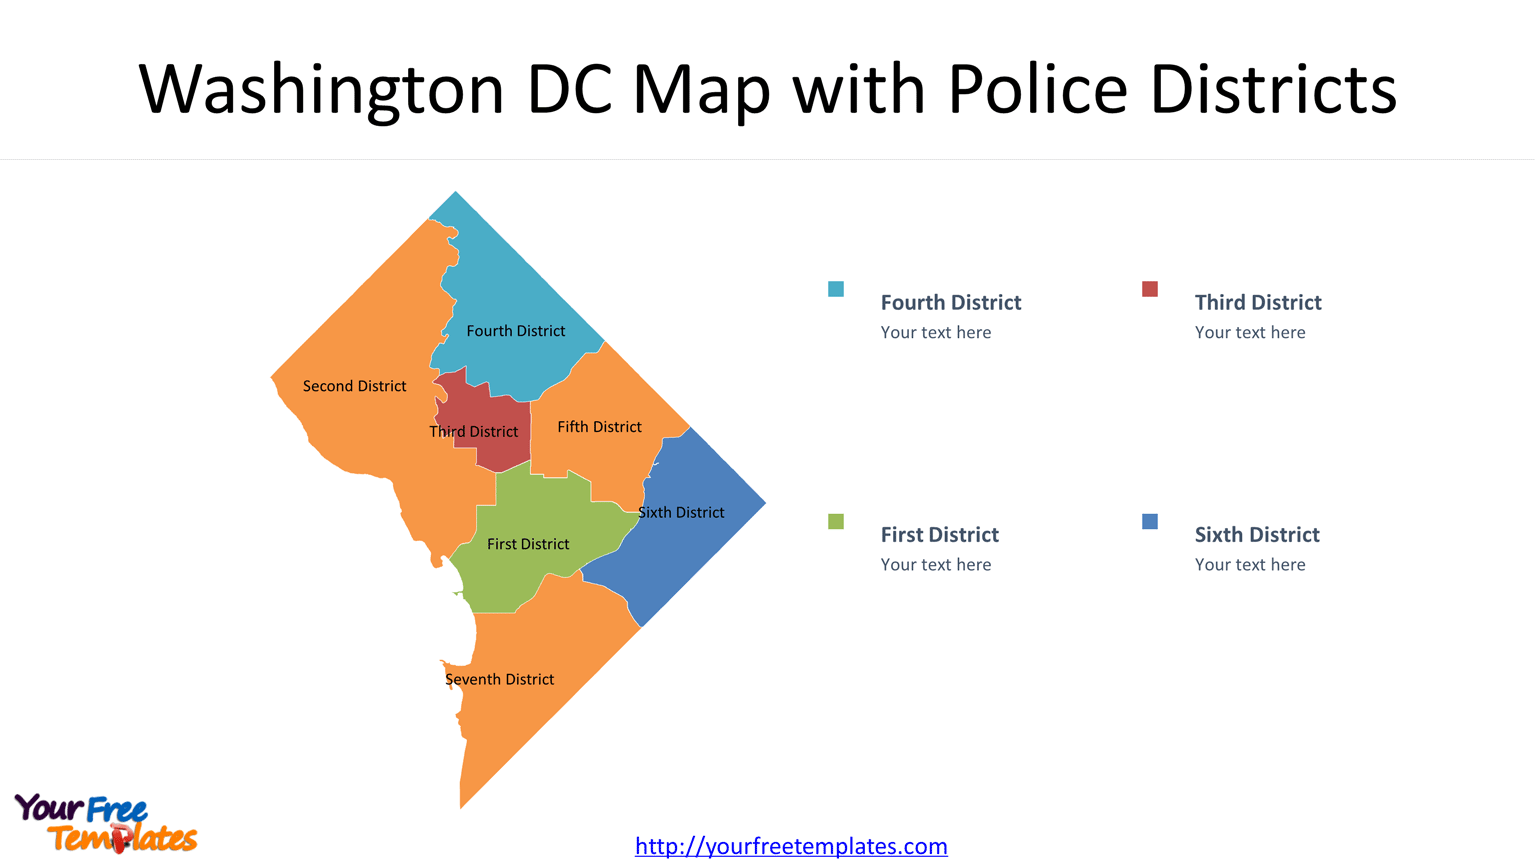 Washington DC boundary